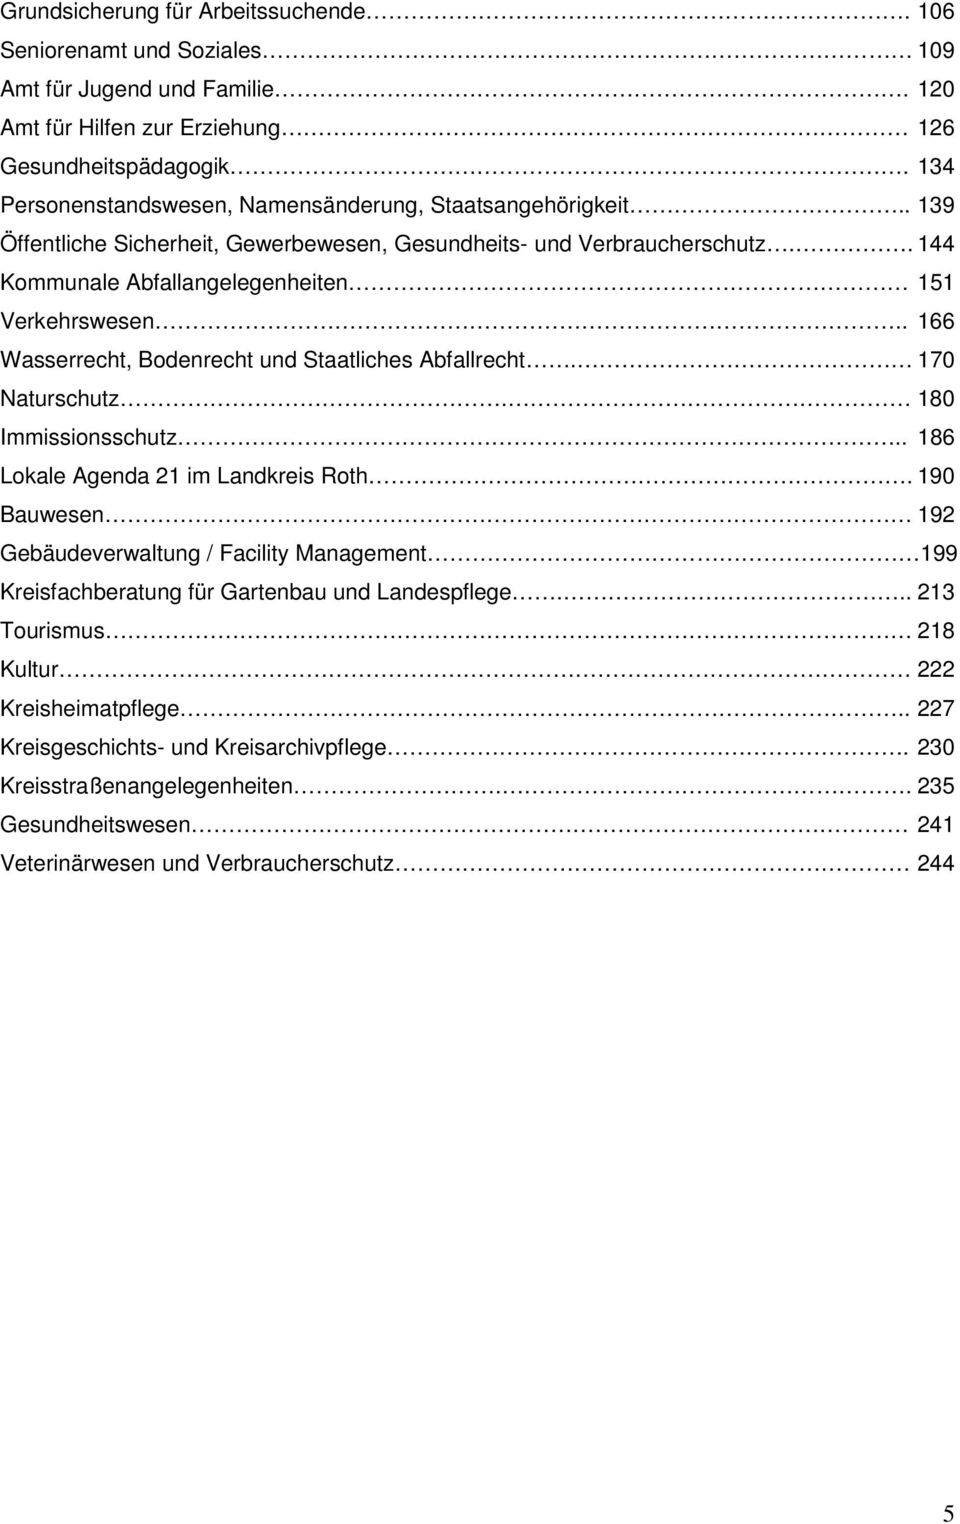 . 166 Wasserrecht, Bodenrecht und Staatliches Abfallrecht. 170 Naturschutz. 180 Immissionsschutz.. 186 Lokale Agenda 21 im Landkreis Roth.